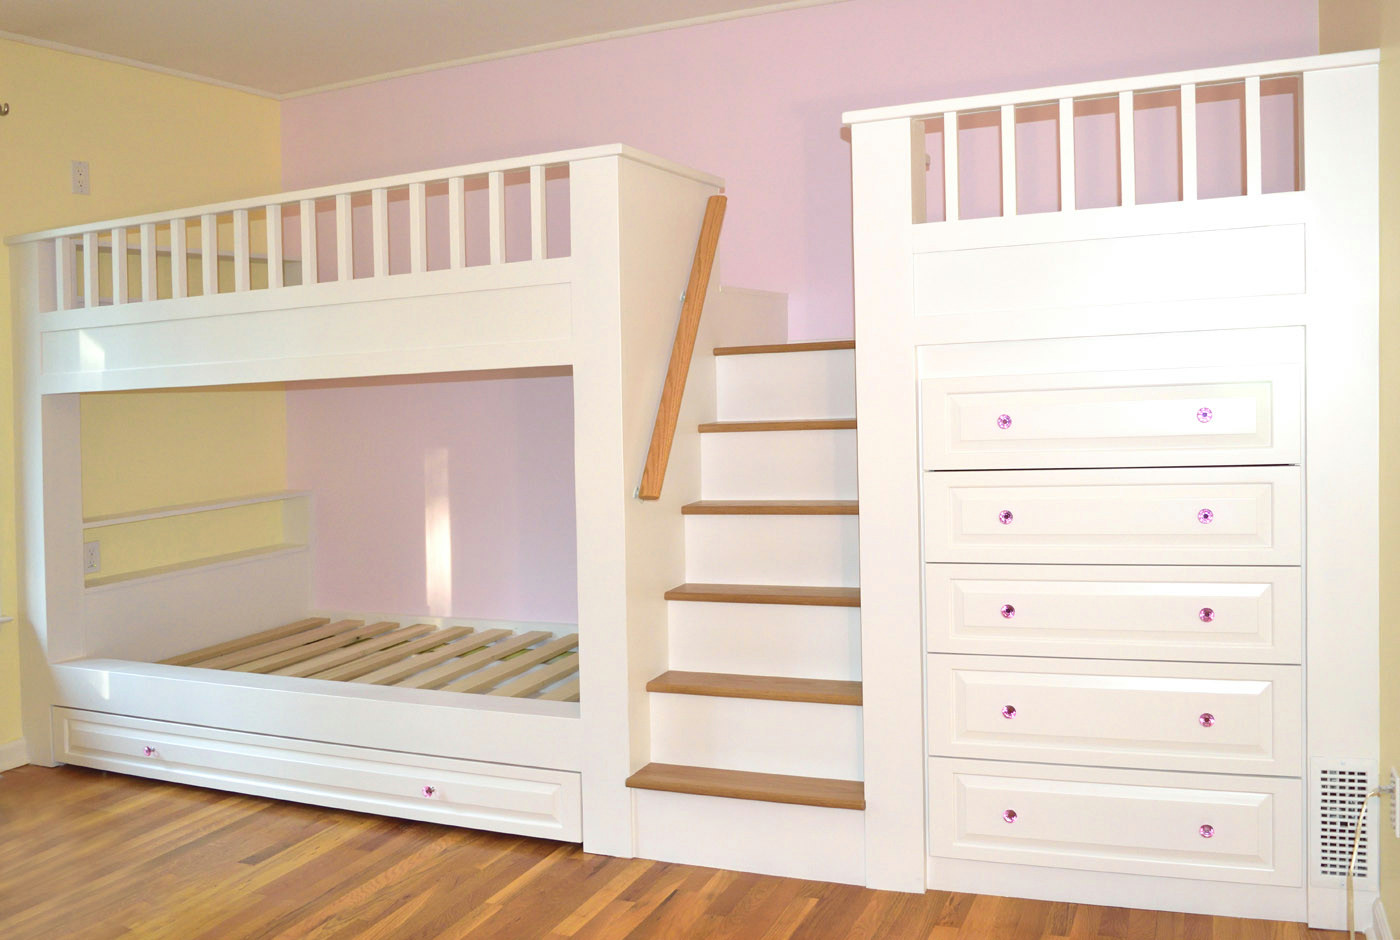 Kid S Room Built In Bunk Beds Dresser, Kids Bunk Beds With Dresser